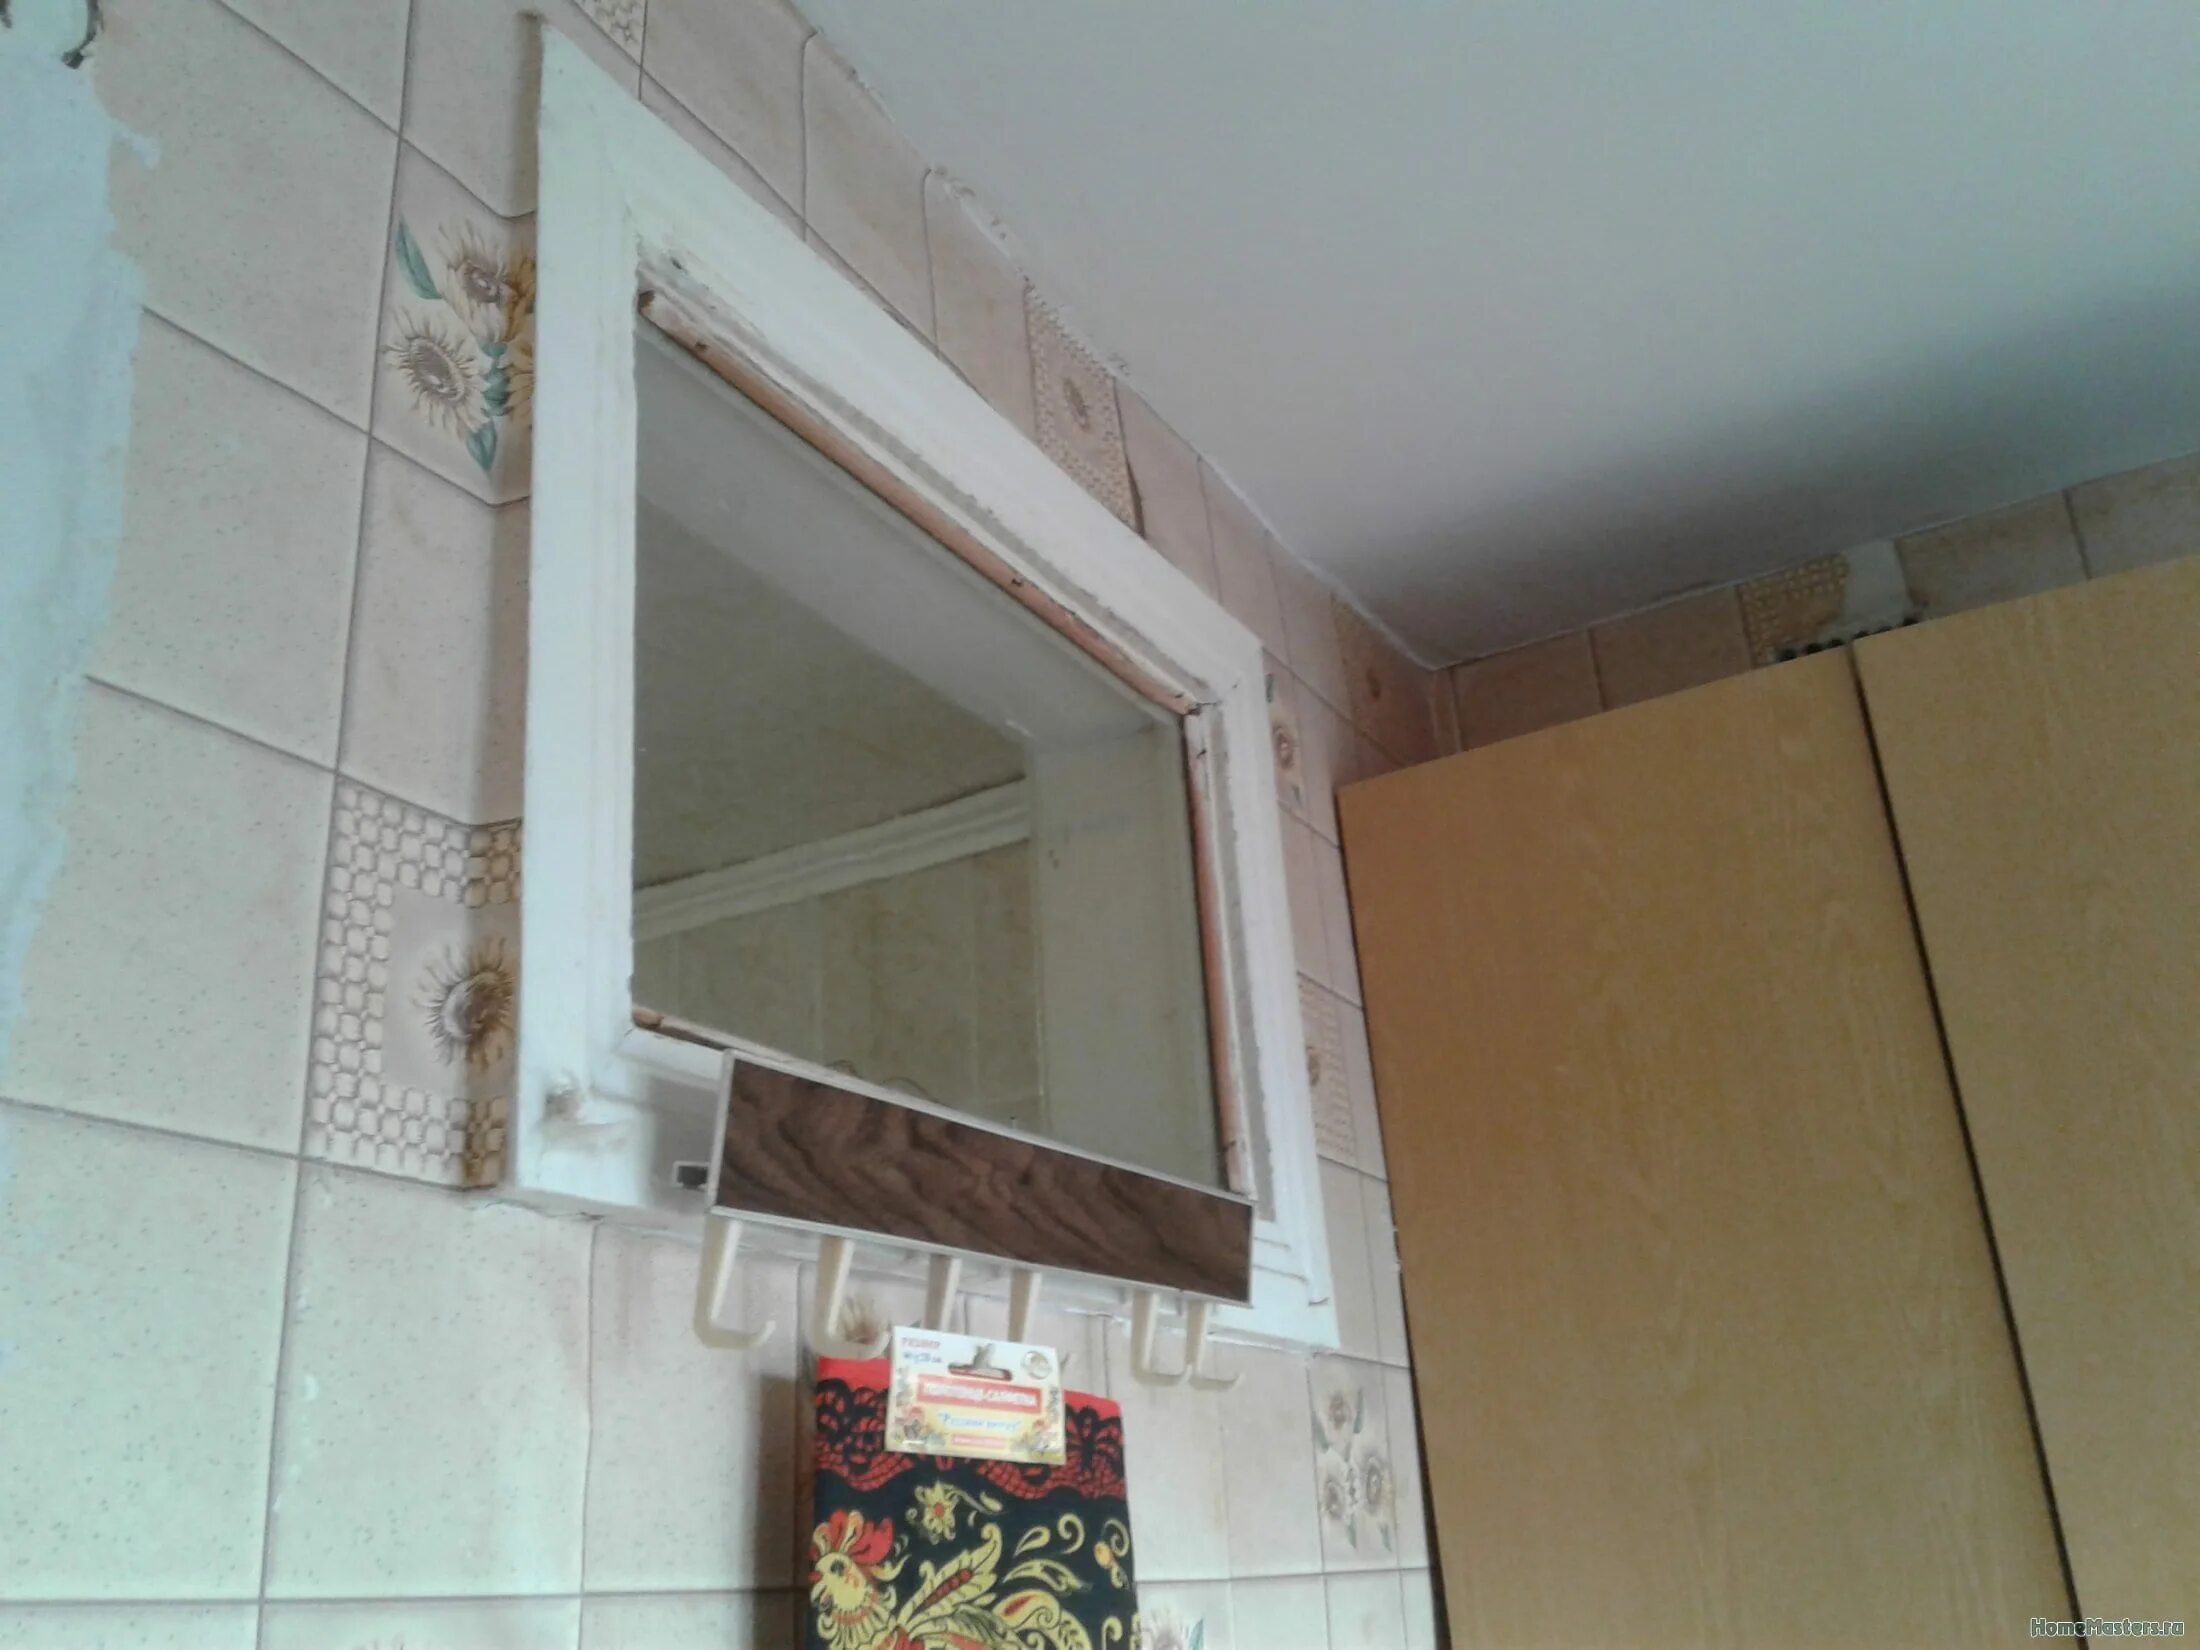 Окно между ванной и кухней. Окно в ванной в хрущевке. Пластиковое окно между ванной и кухней. Окошко между ванной и кухней. Из ванны кухню можно